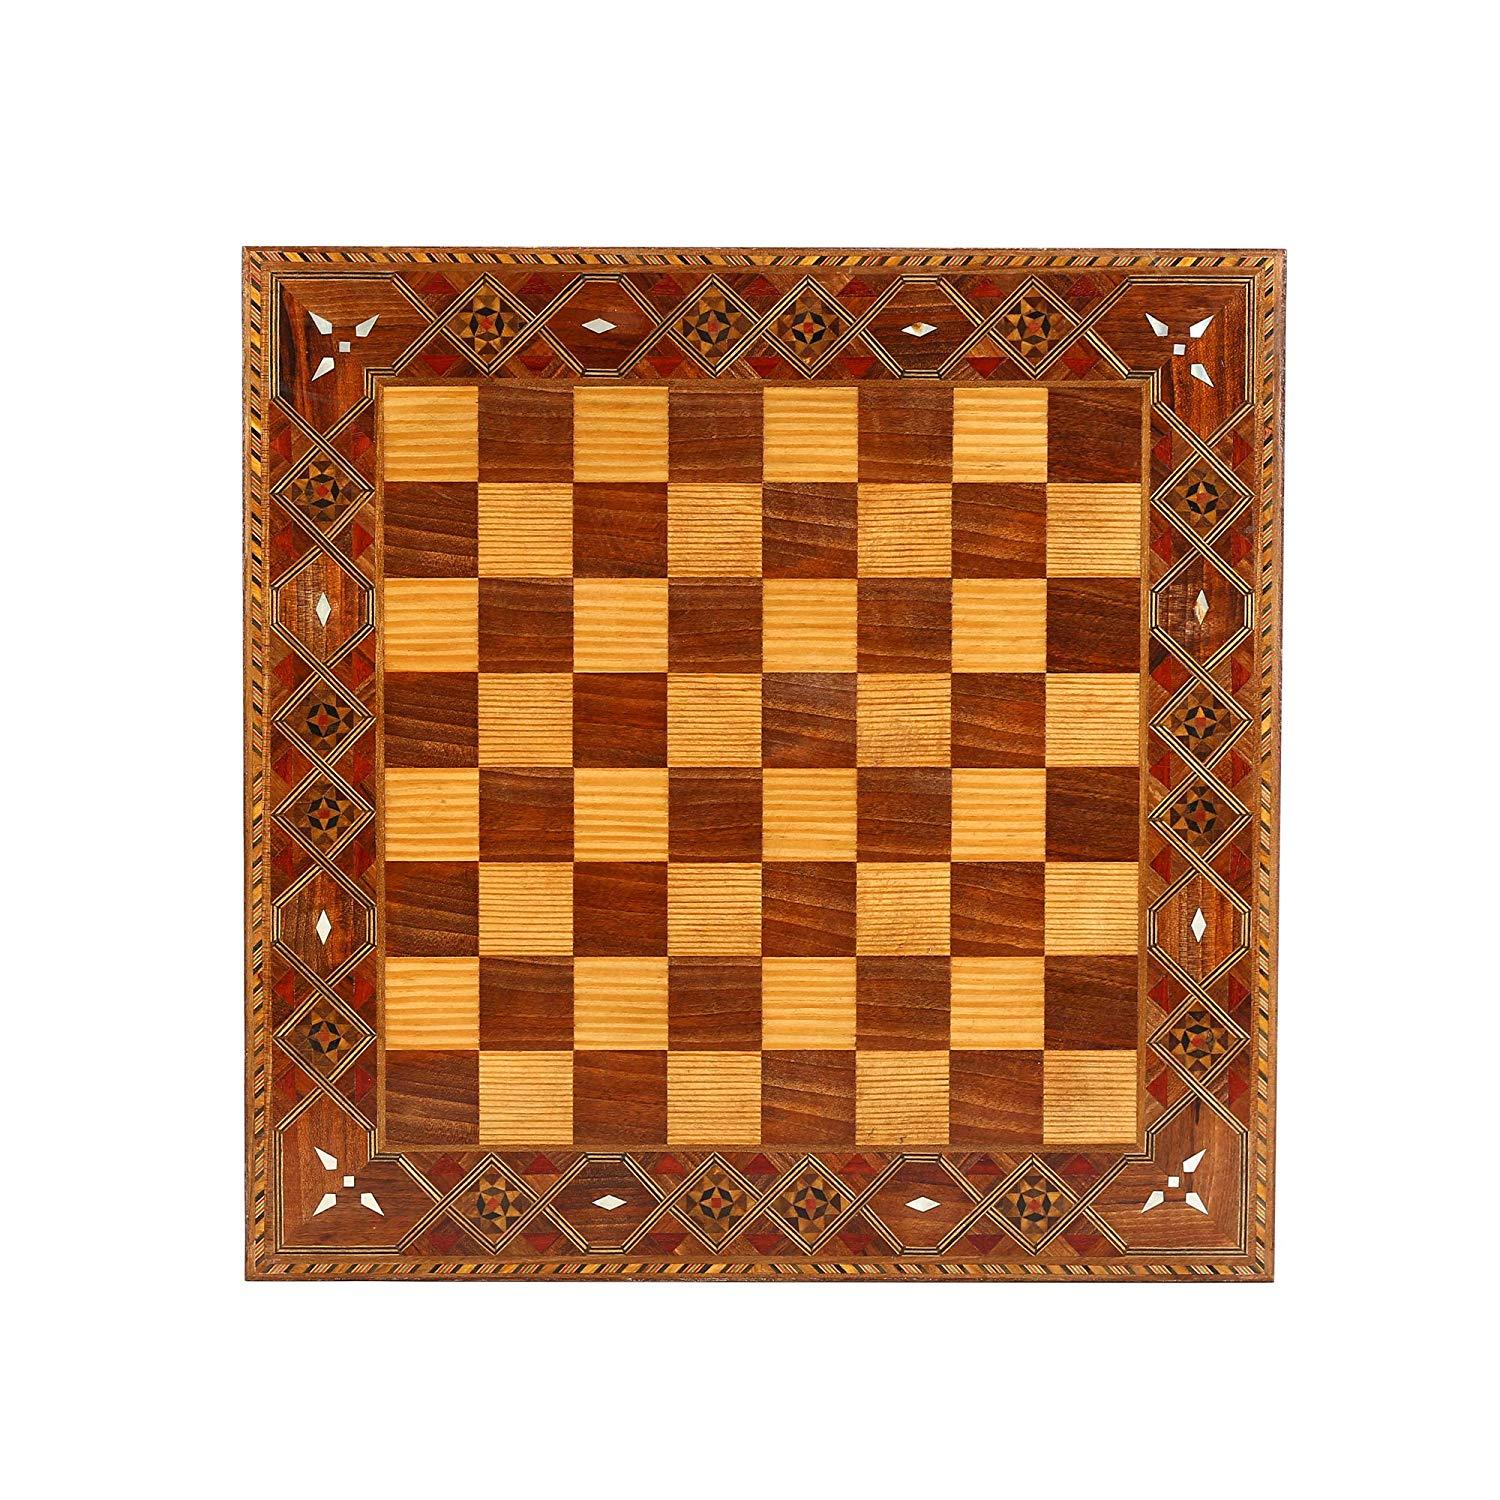 Изображение товара: Набор медных металлических шахматных фигур средневековой британской армии, набор ручной работы, шахматная доска из натурального массива дерева, оригинальный жемчуг, размер King 7 см